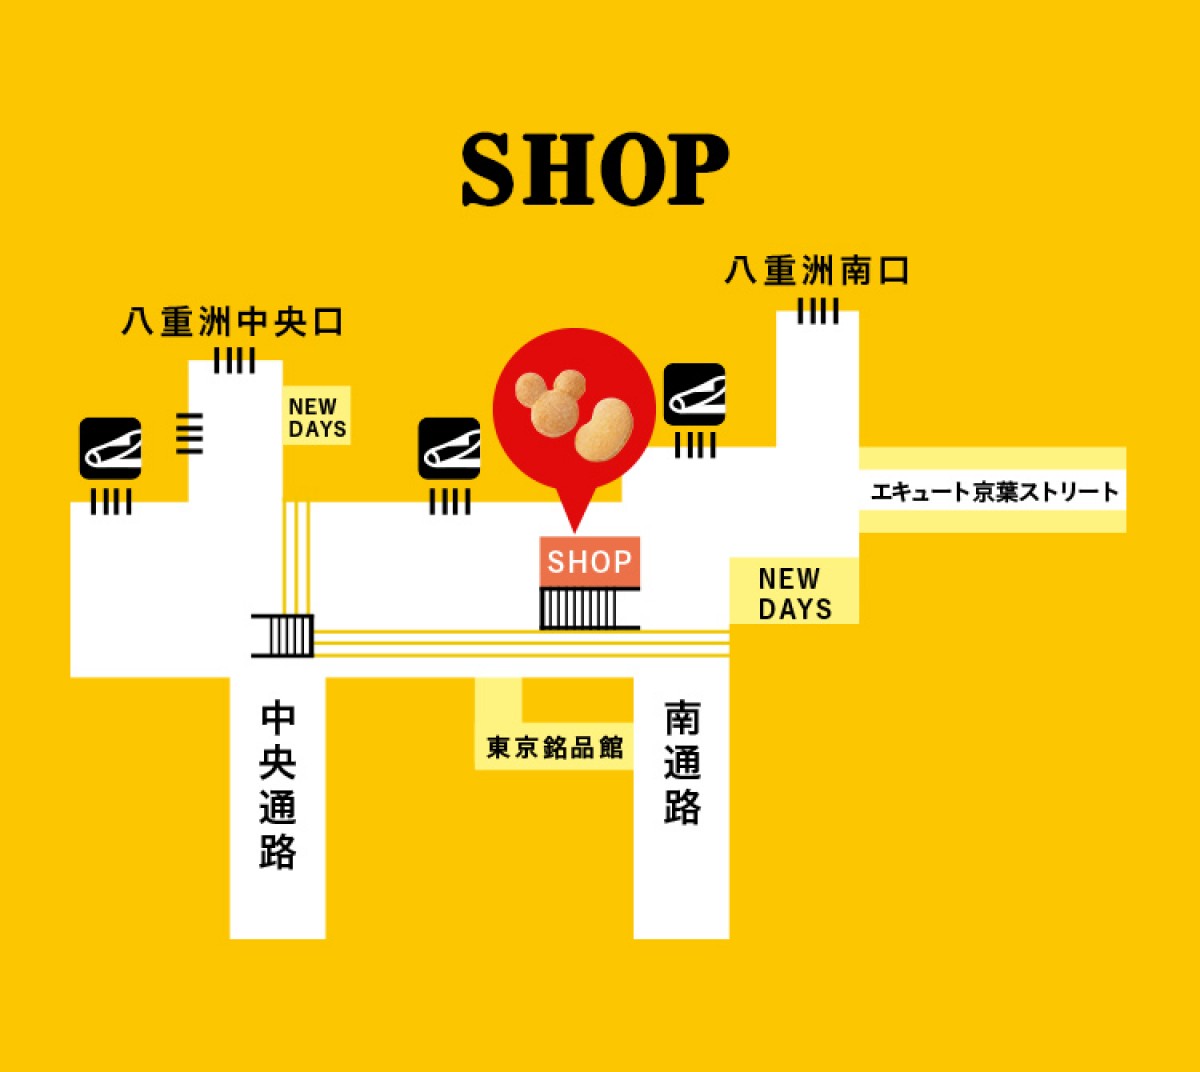 東京ばな奈とディズニーの共同スイーツショップ1号店、東京駅にオープン